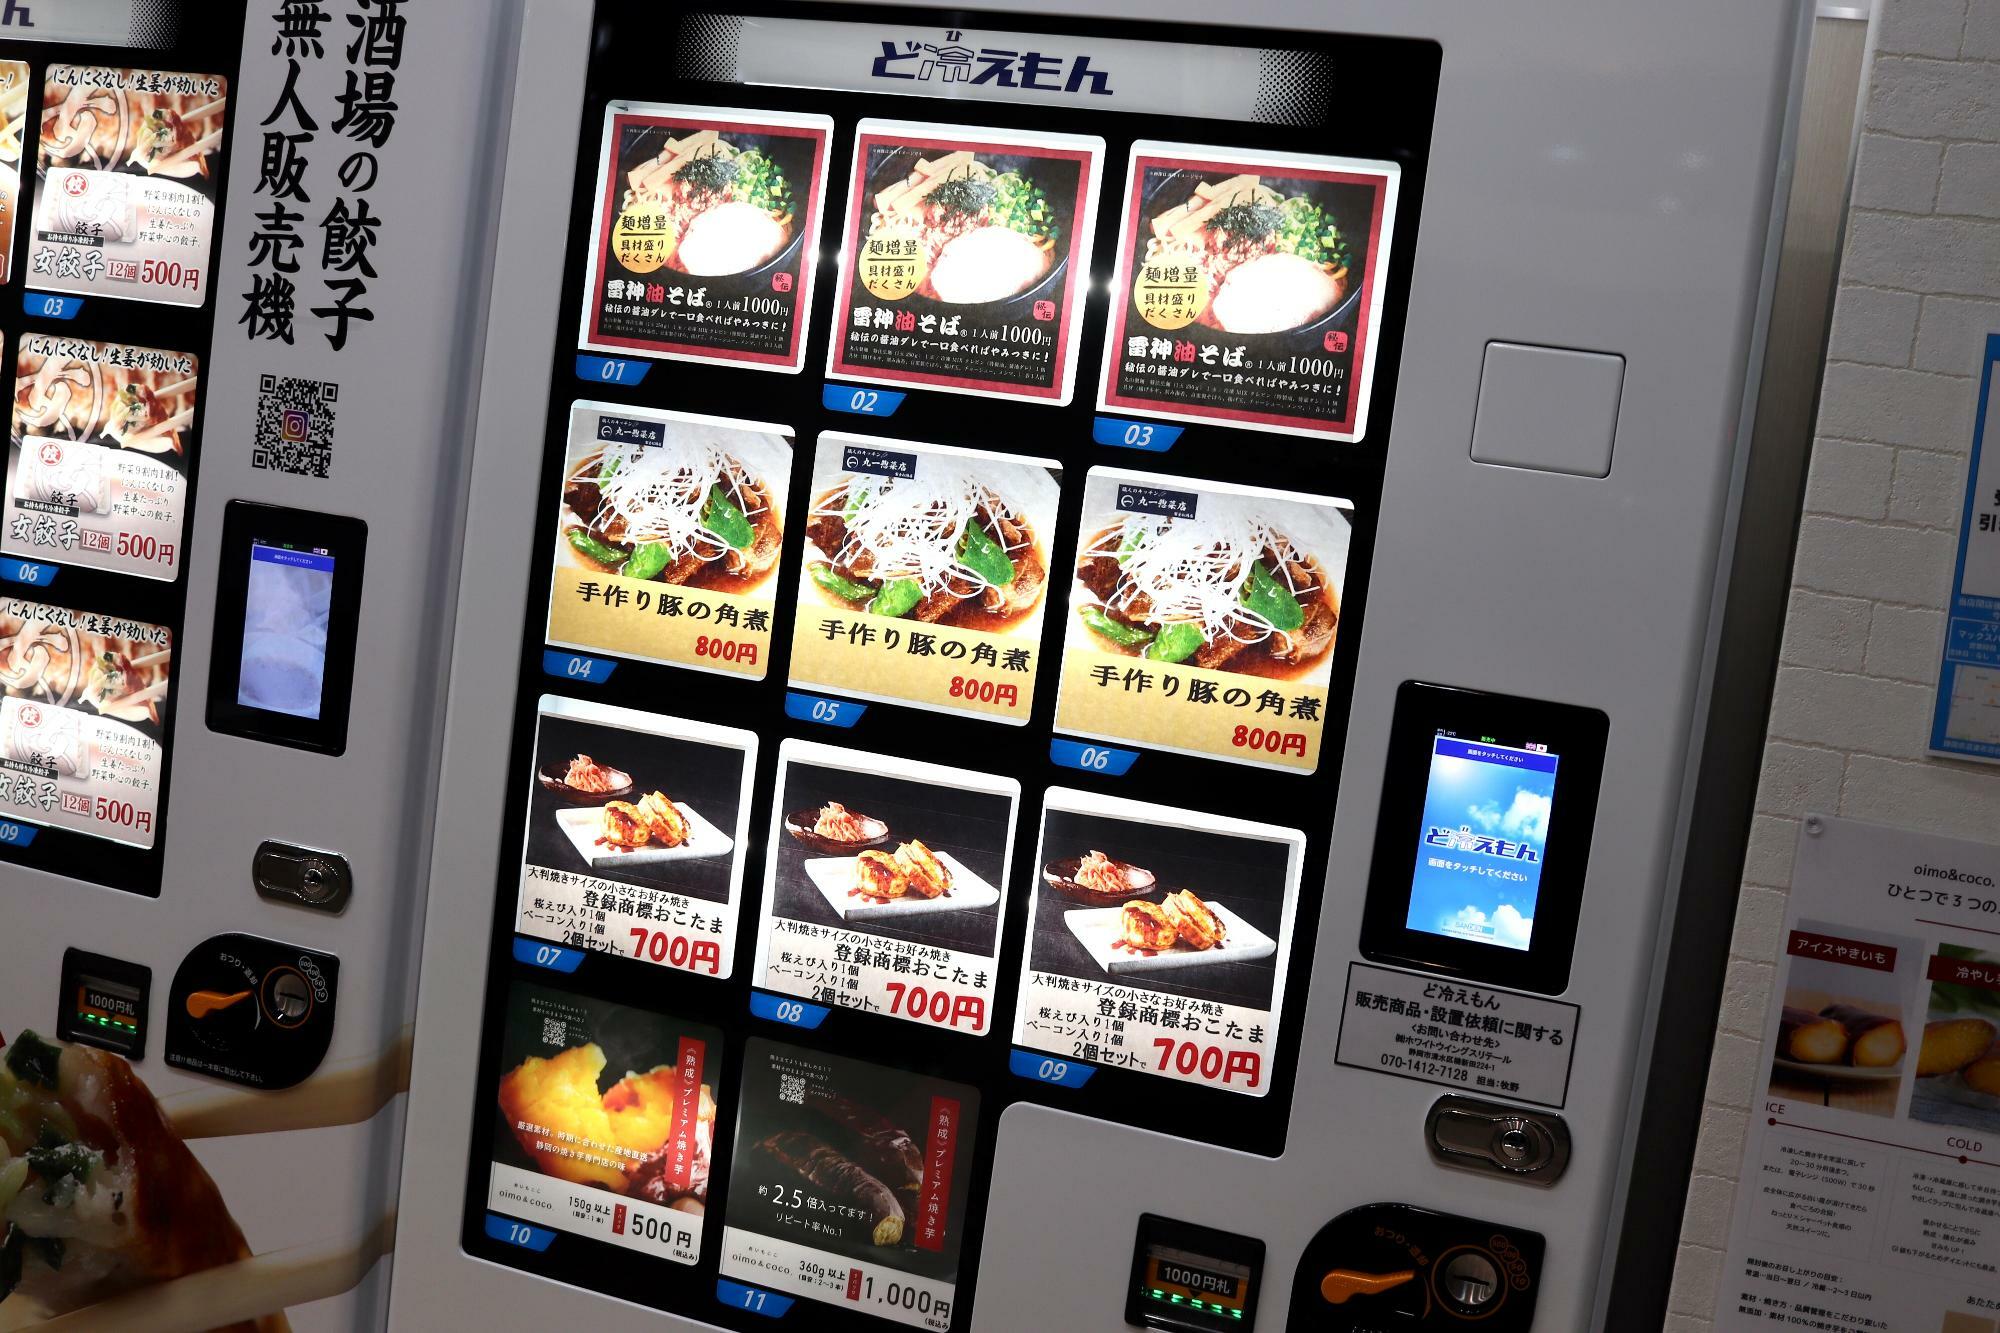 コインランドリーに設置された冷凍食品の自動販売機